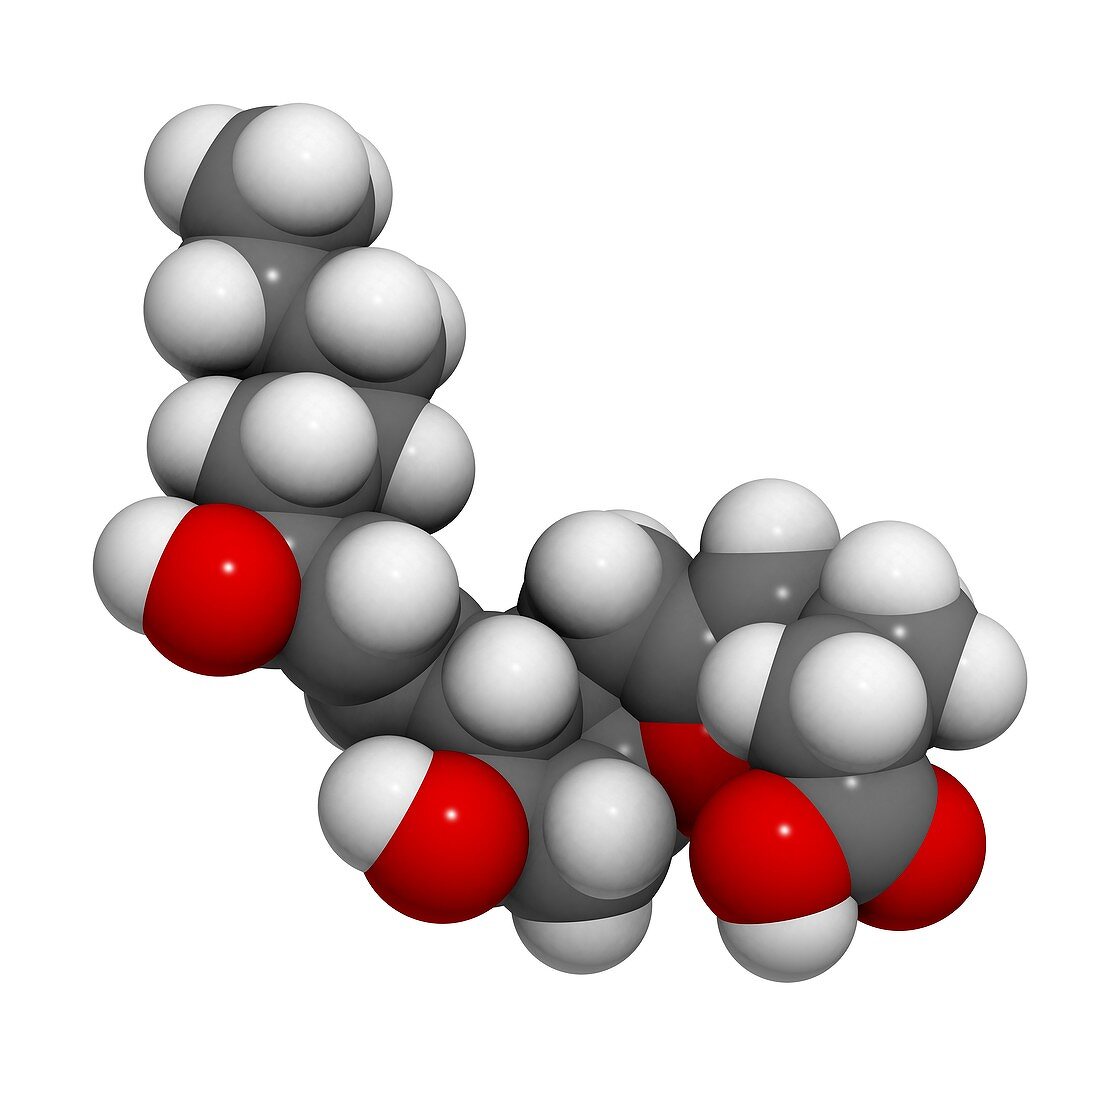 Prostaglandin I2 drug molecule